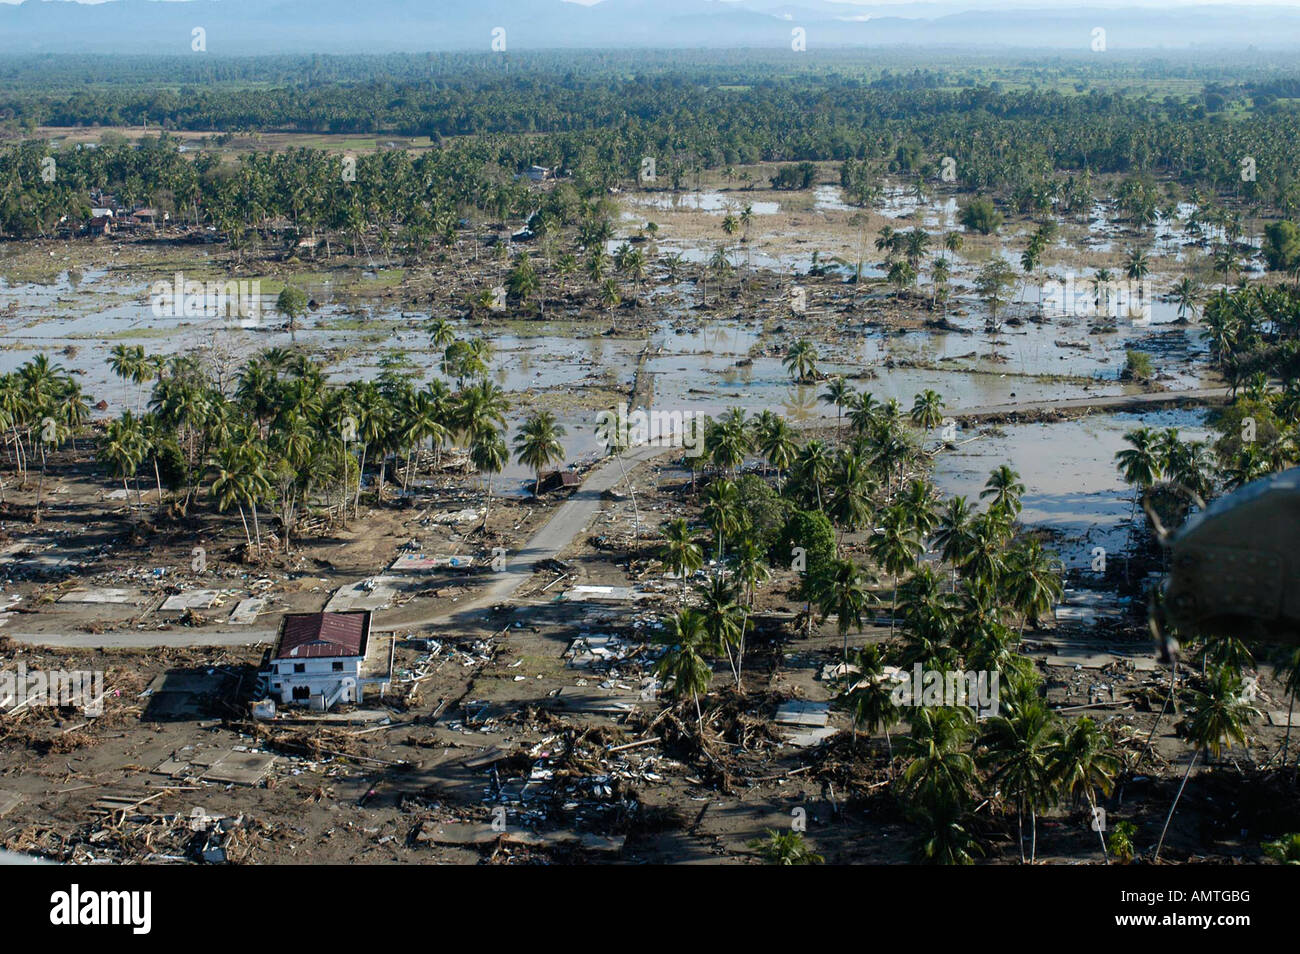 Vista aerea dello tsunami i danni nel villaggio di Keude Teunom nella provincia di Aceh in Indonesia. Il 2004 Oceano Indiano terremoto registrato a 9.1-9.3. Foto Stock